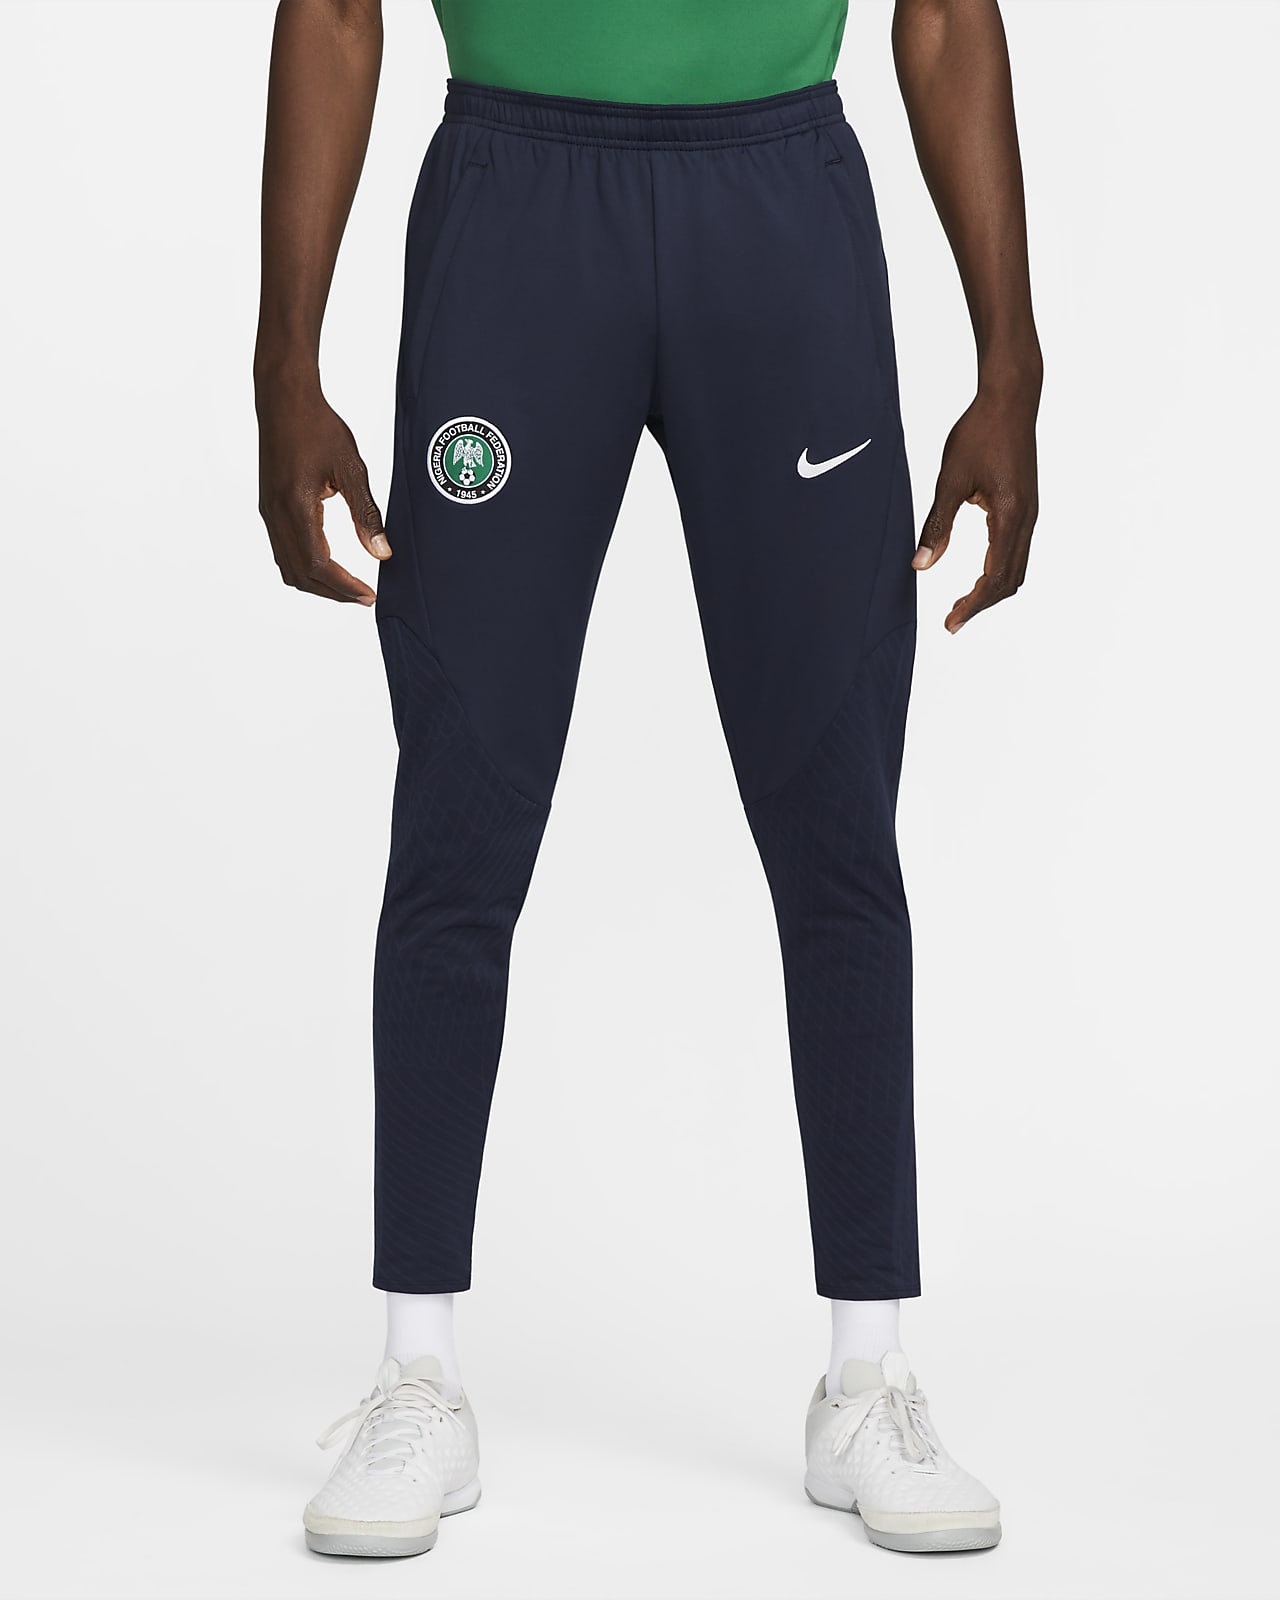 Nigeria Pantalón de Dri-FIT - Hombre. Nike